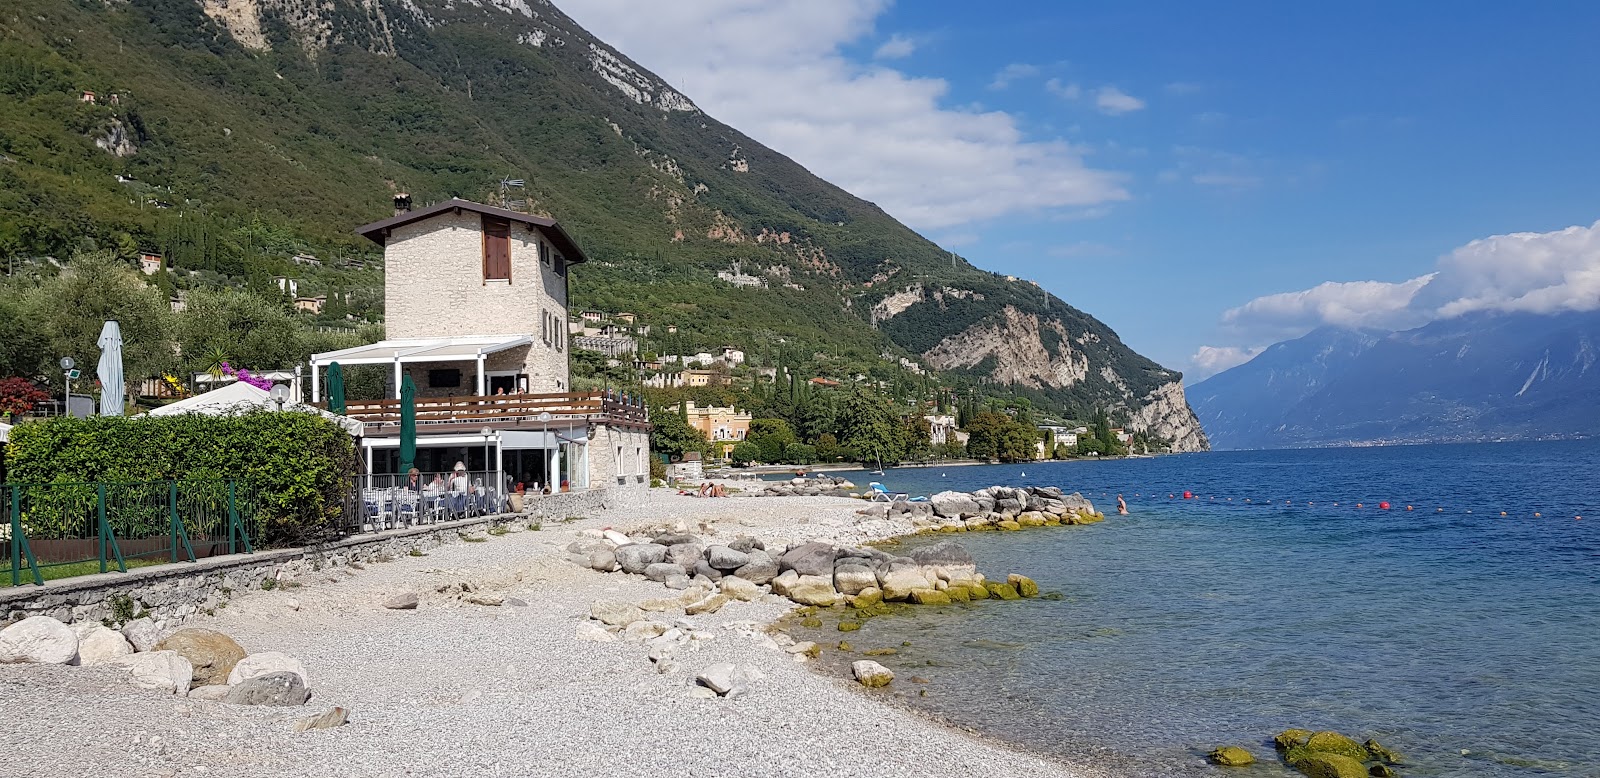 Photo of Spiaggia di Via Fontanella with gray pebble surface